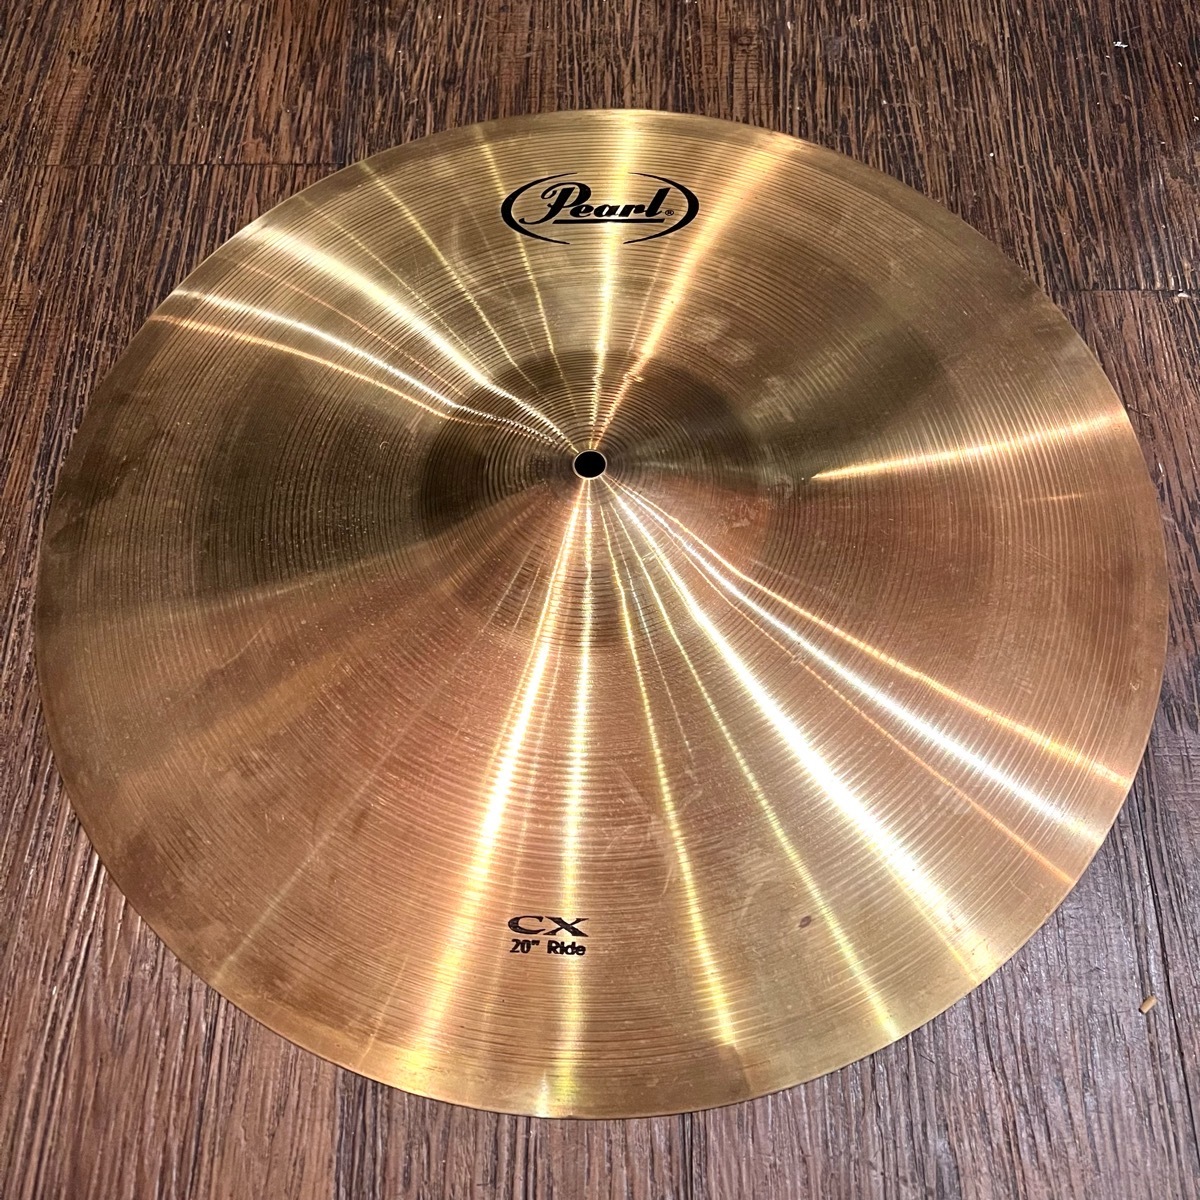 Pearl パール CX cymbal ライドシンバル 20インチ -GrunSound-h408-_画像1